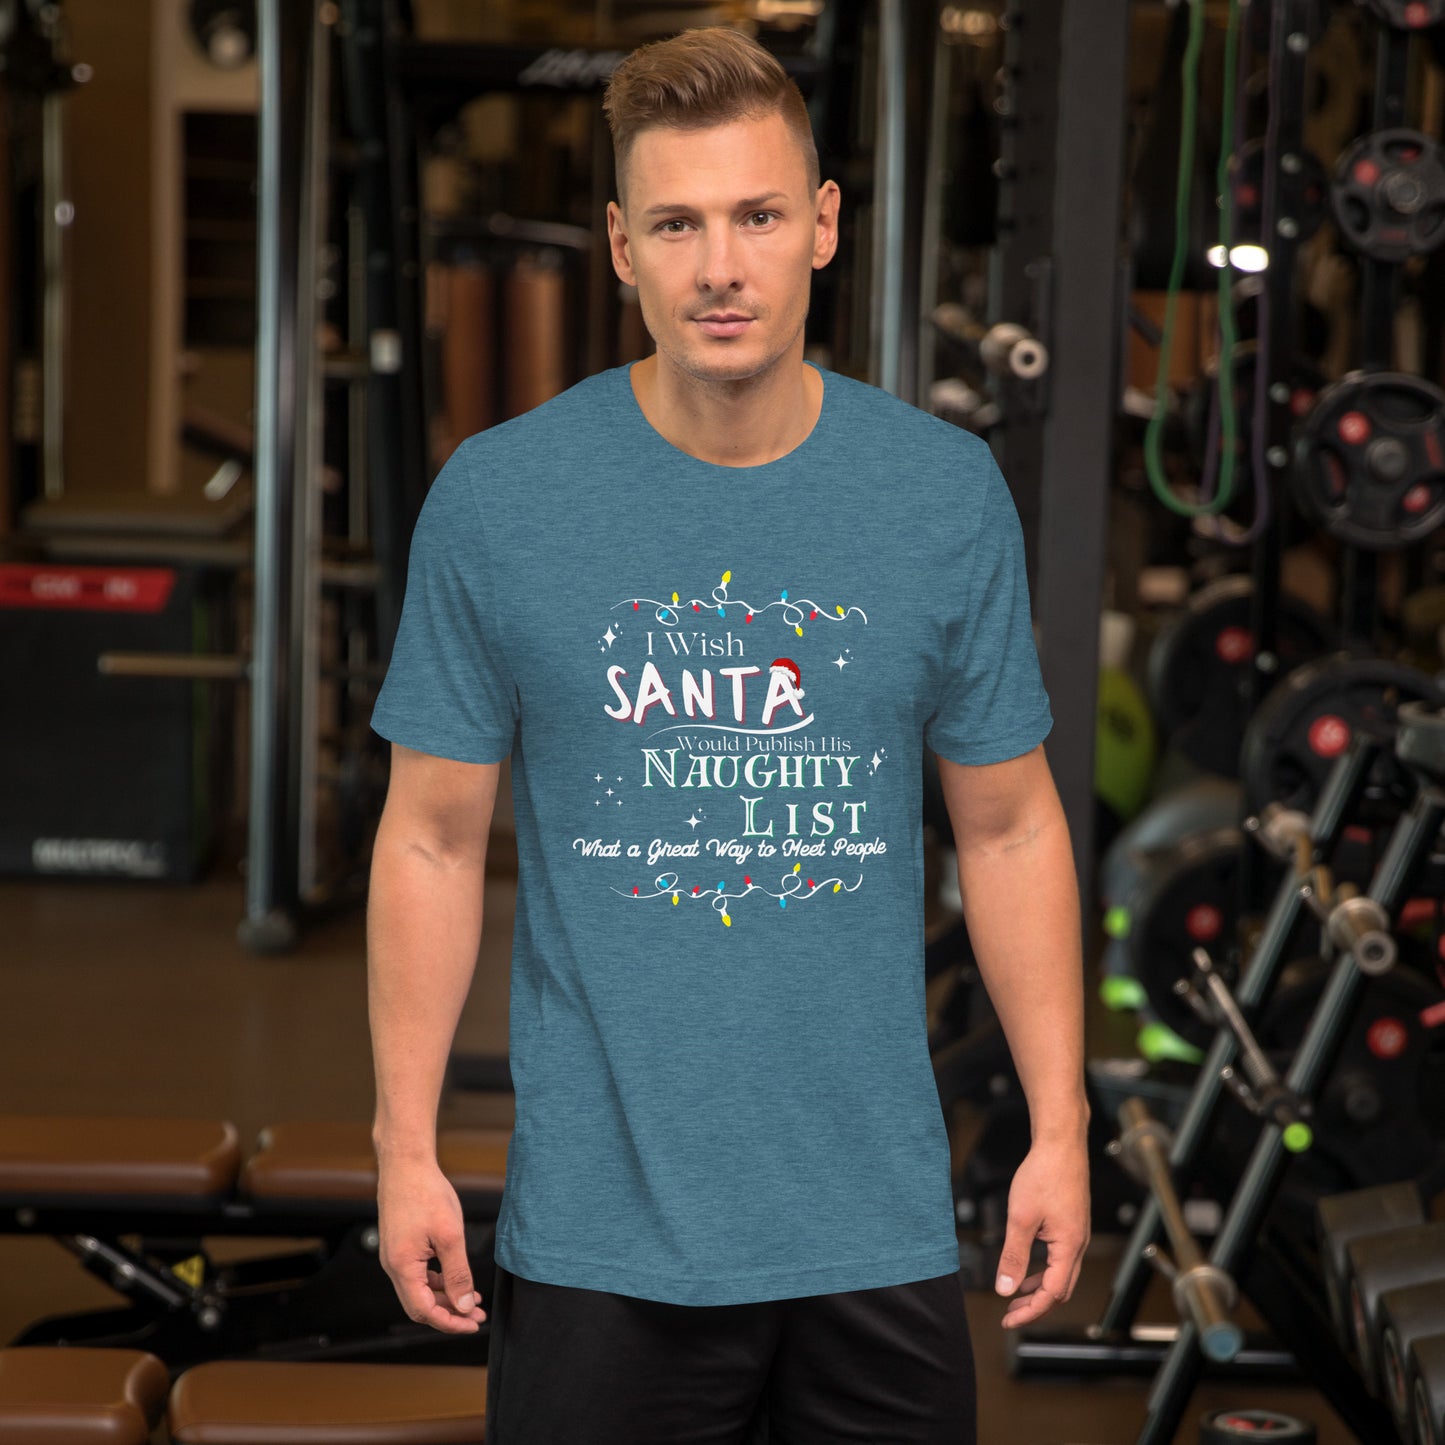 Santa's Naughty List t-shirt